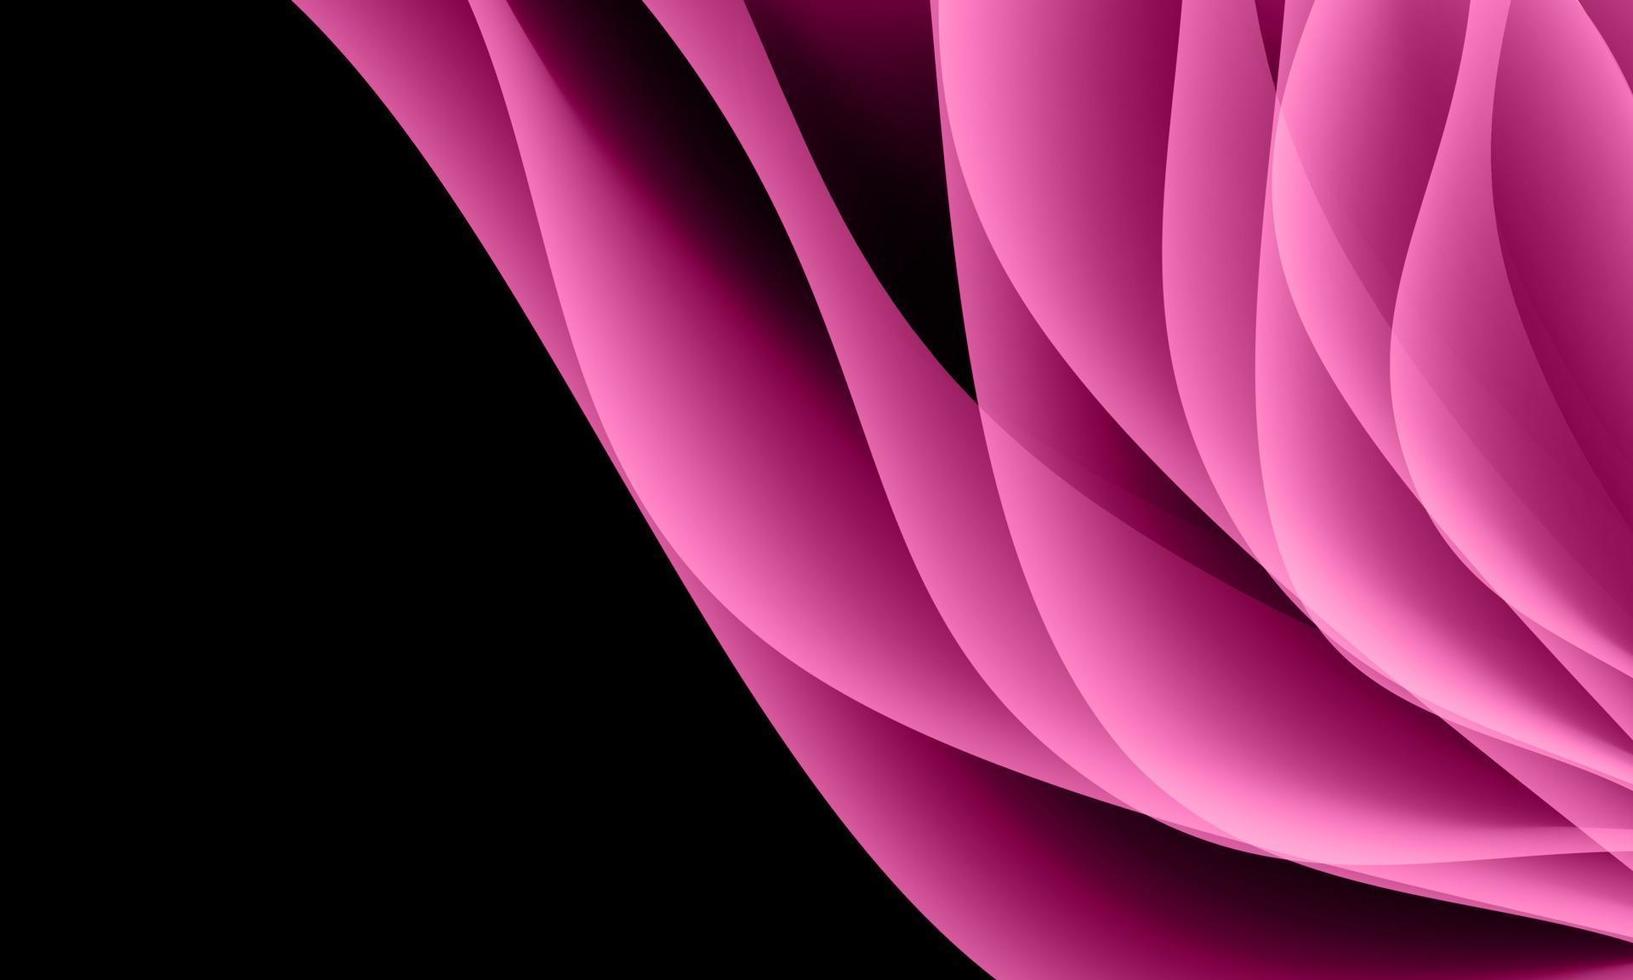 abstrakt rosa kurvvågöverlappning på svart med tomt utrymme bakgrundsvektorillustration. vektor illustration.